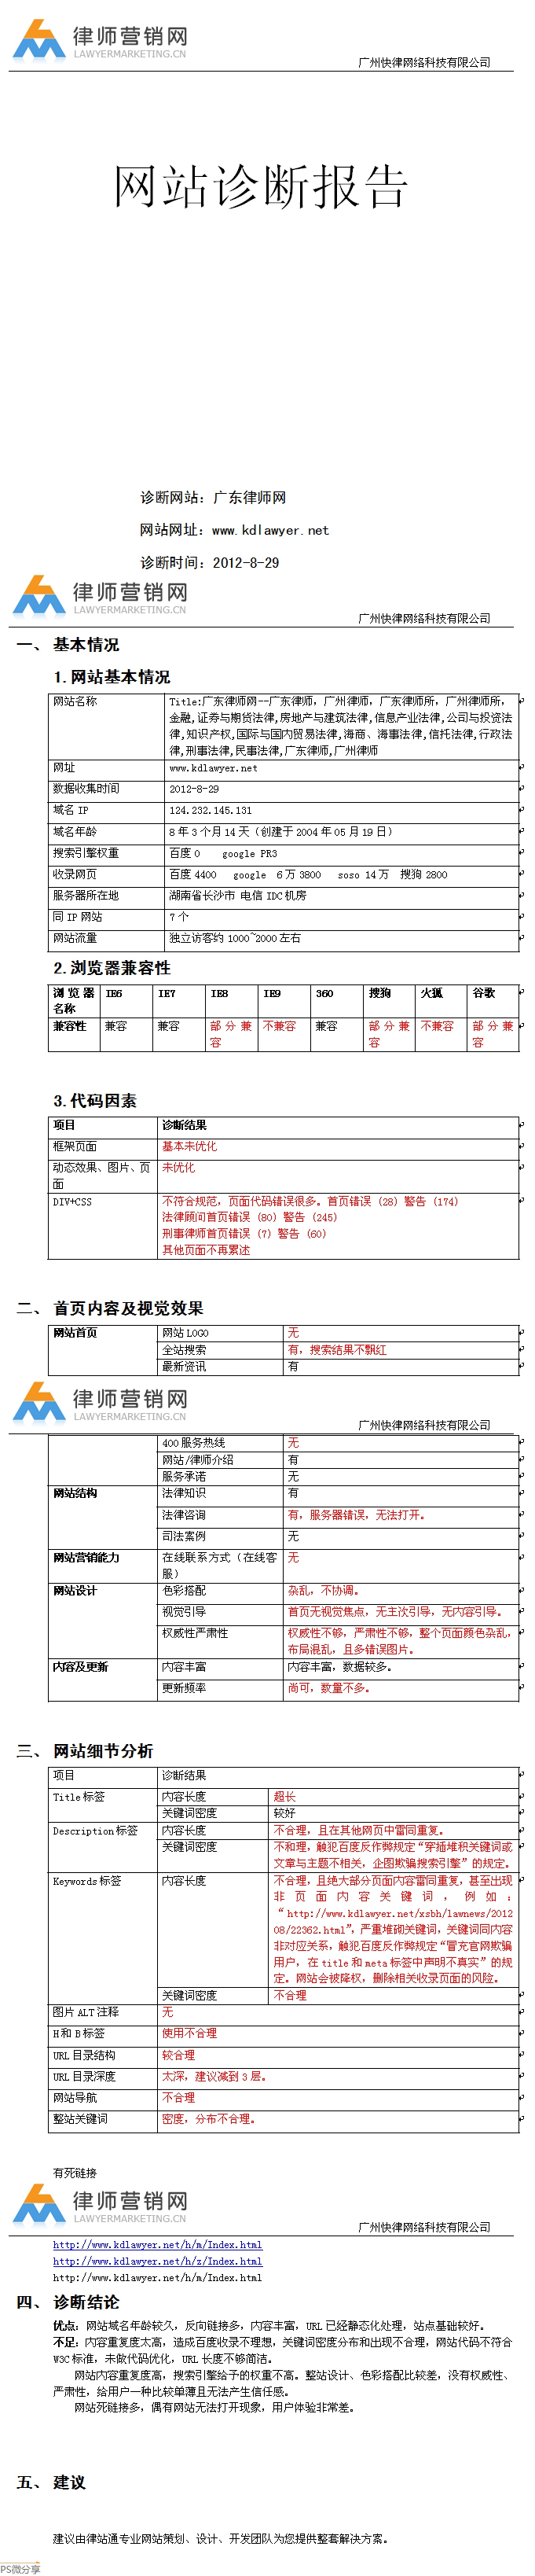 广东律师网诊断分析报告